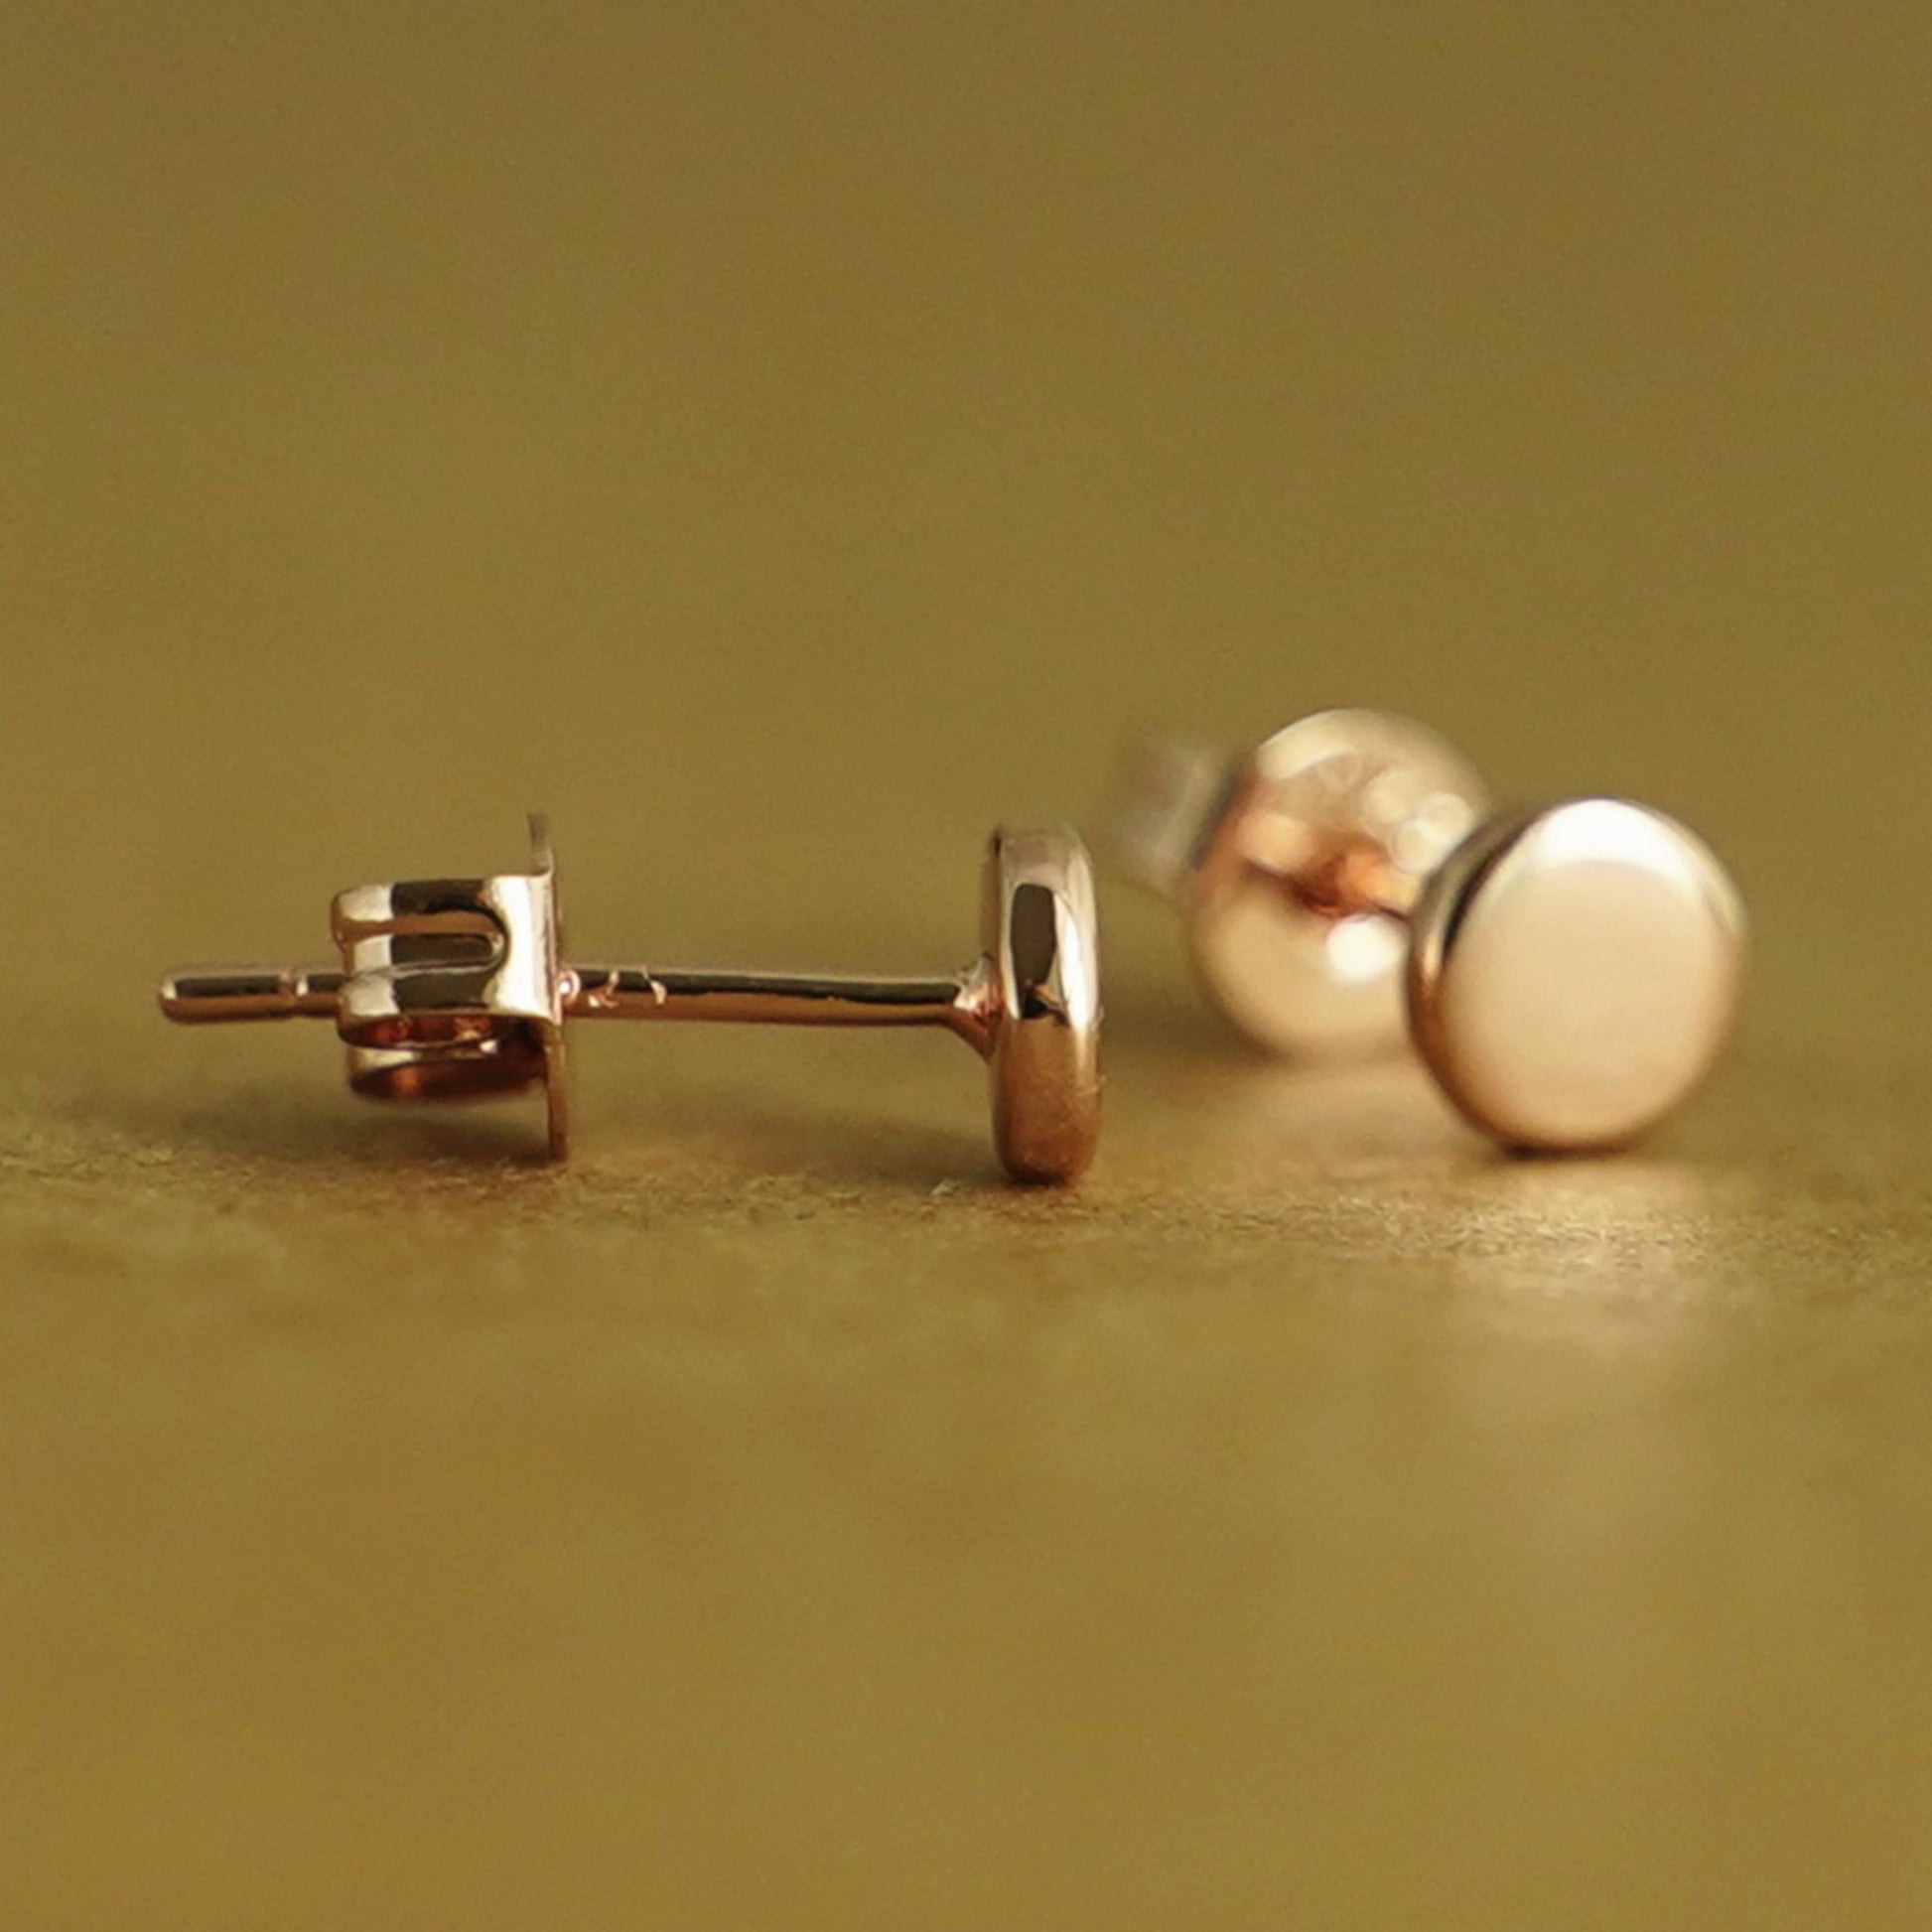 925 Sterling Silver Small Flat Dot Disc Plain 4.5mm Round Stud Earrings in 3 Tones - sugarkittenlondon